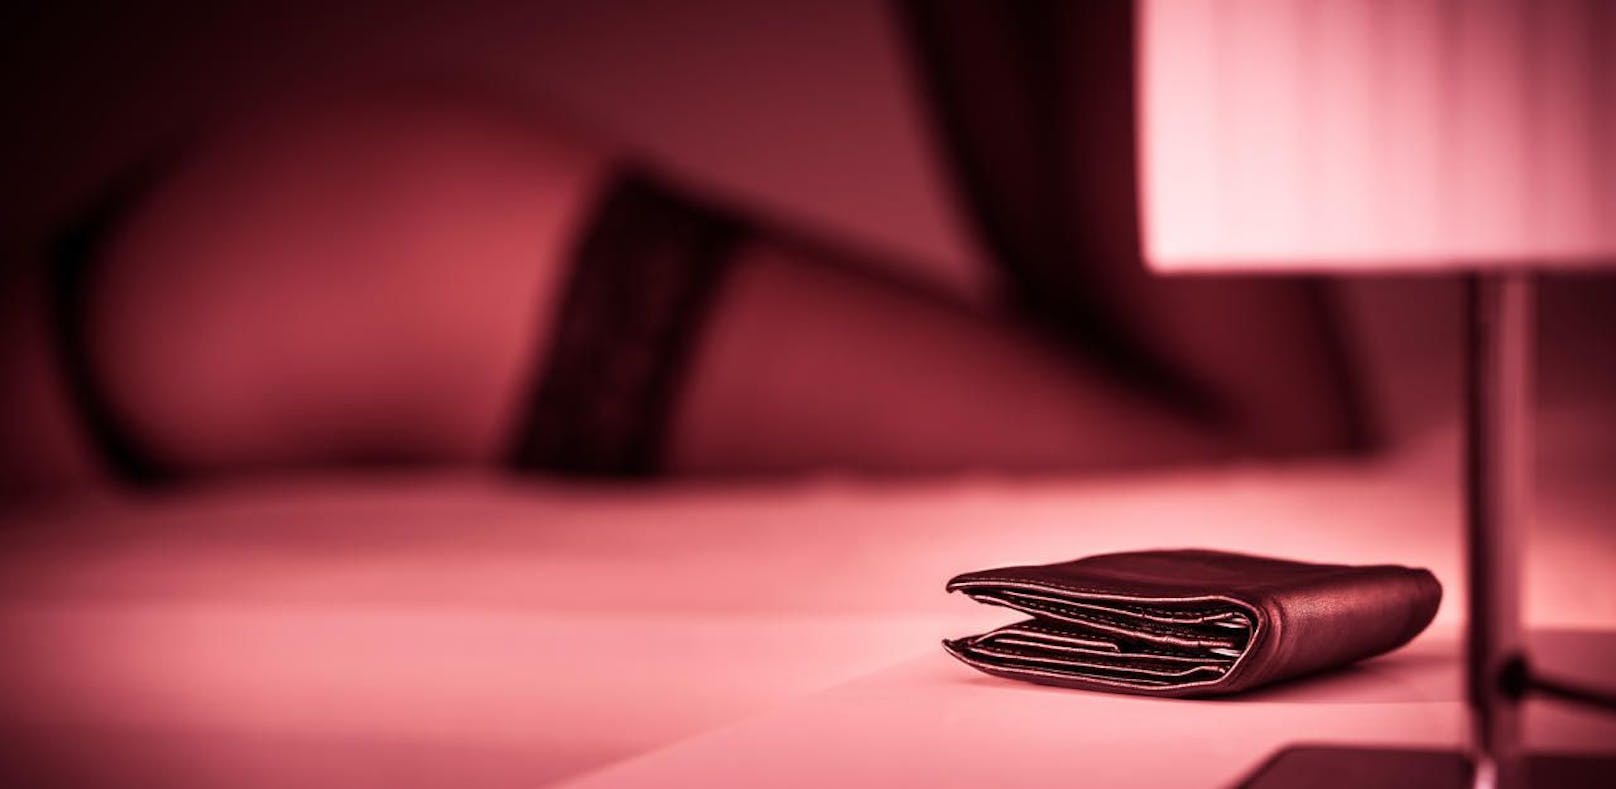 Sexkauf-Verbot: Wird Prostitution in Zukunft verboten?